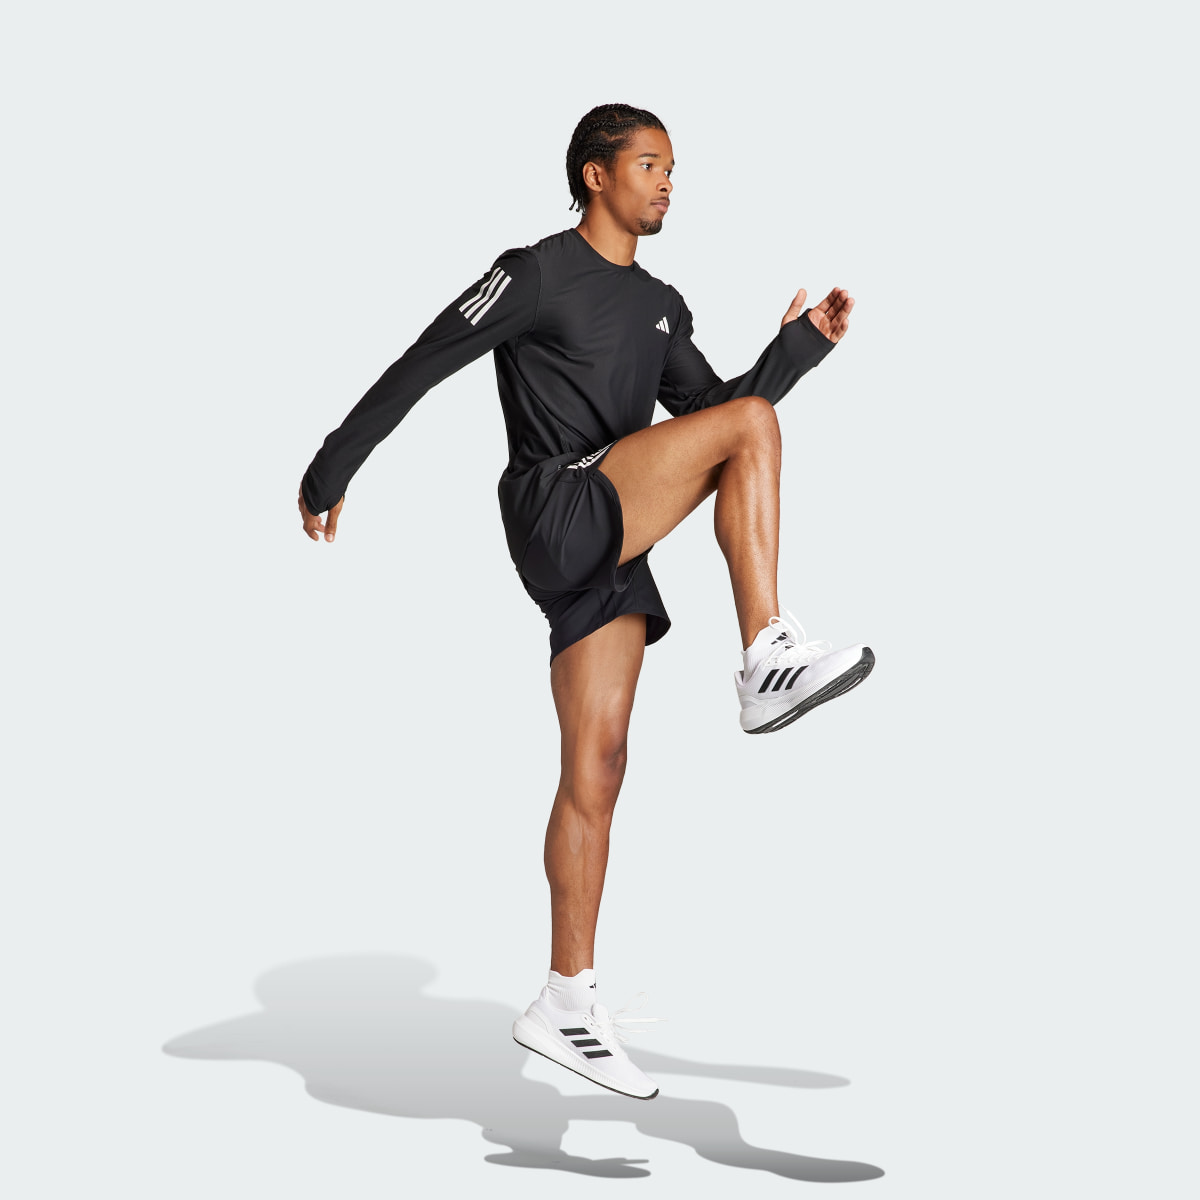 Adidas Own The Run Long Sleeve Long-Sleeve Top. 4